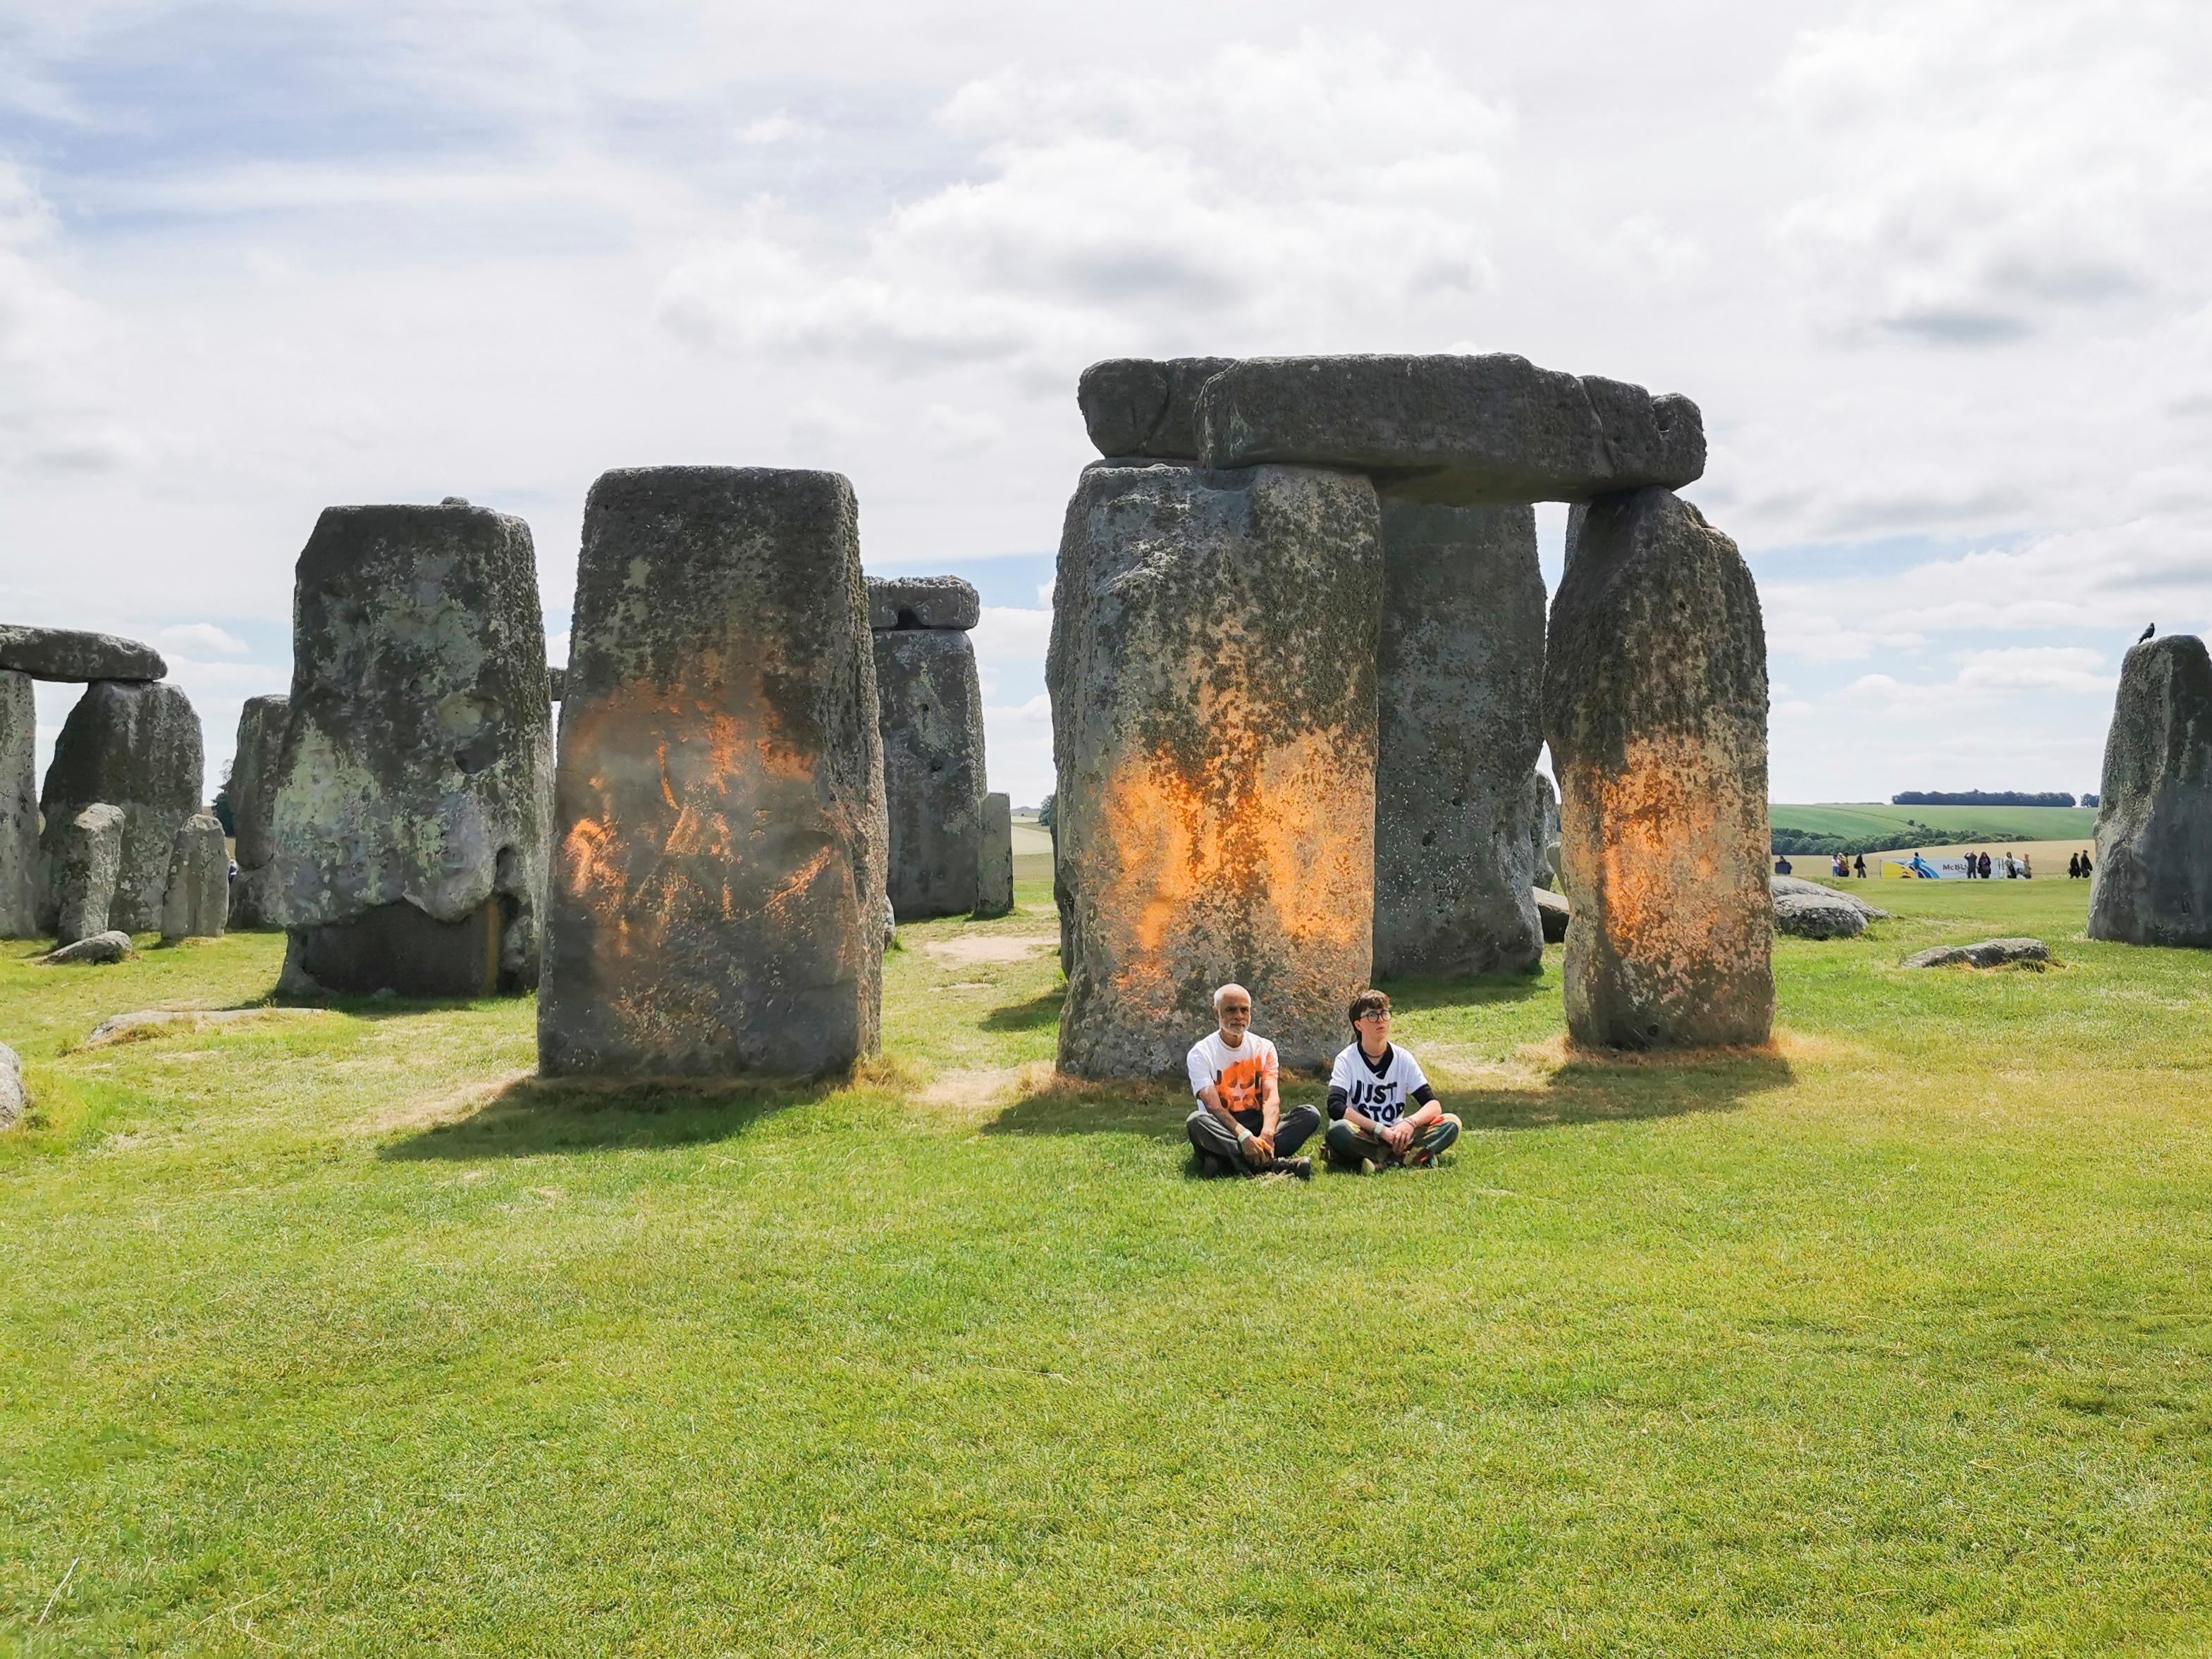 Aktivisterna satte sig ned efter att ha sprejat den förhistoriska stensättningen Stonehenge. Foto: Just Stop Oil via AP/TT